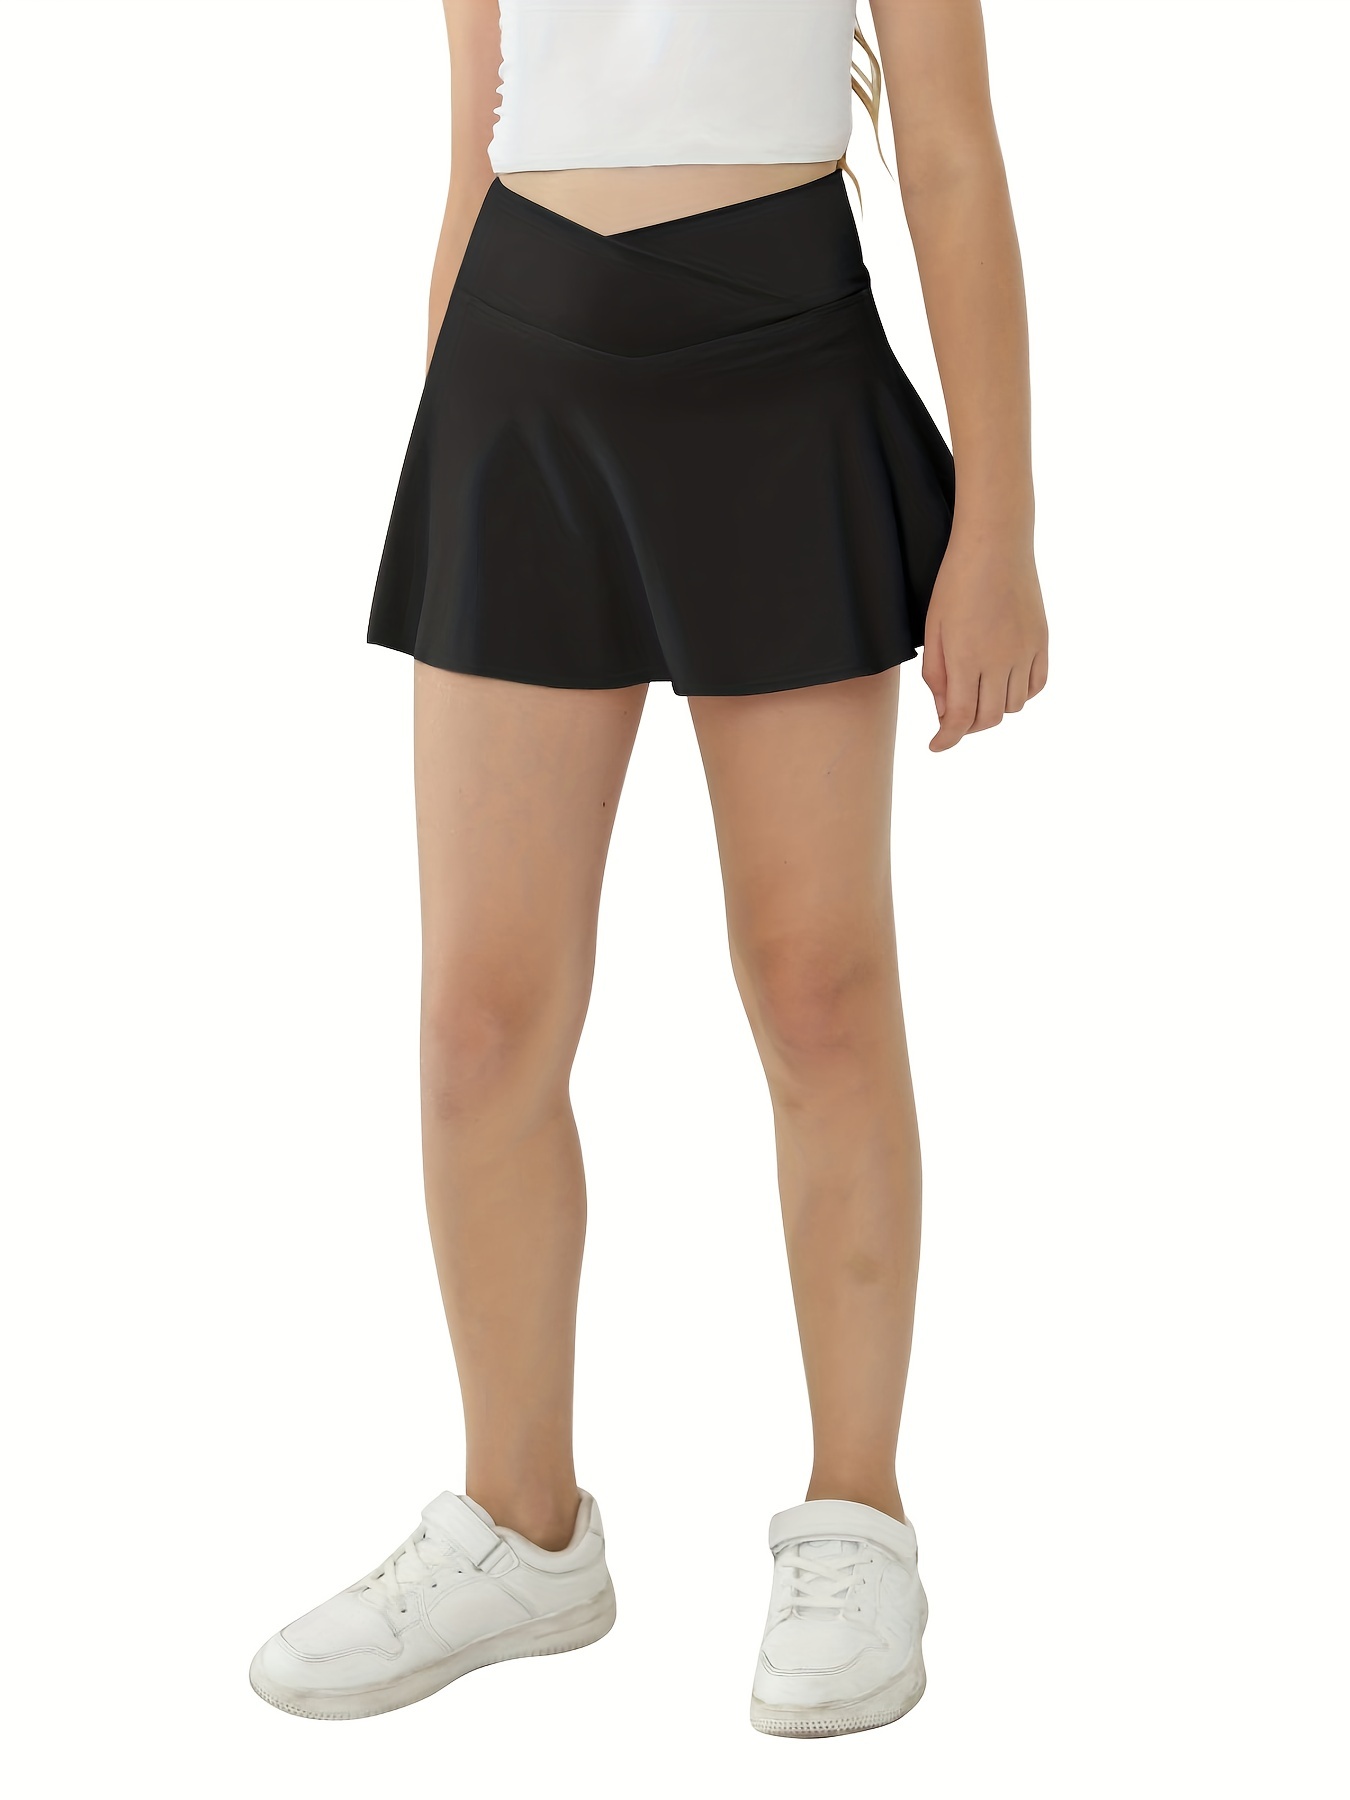 Workout Skirts & Dresses, Tennis & Golf Skirts